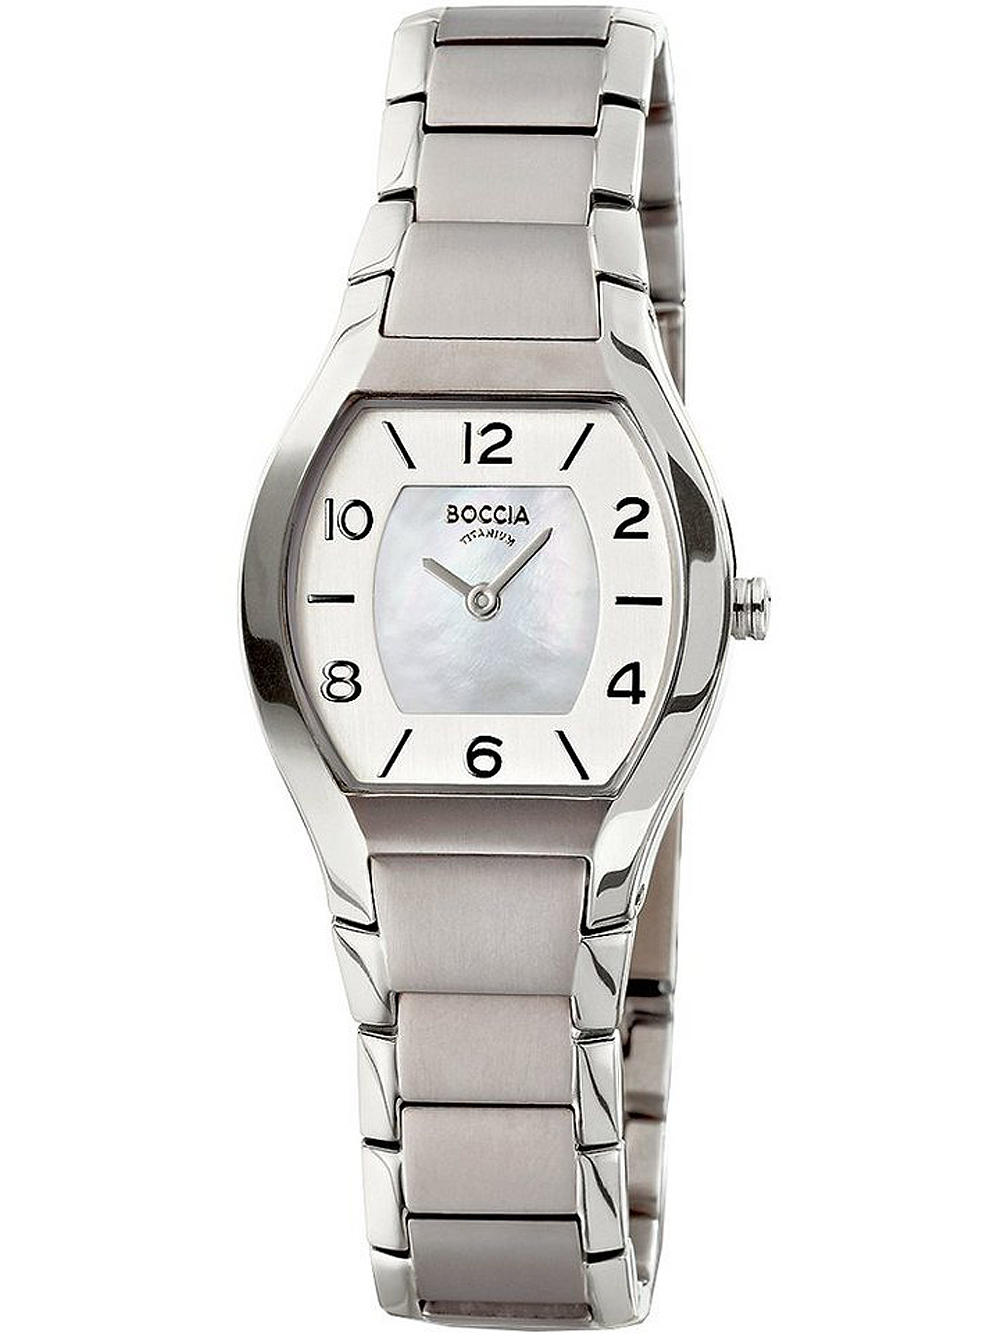 Dámské hodinky Boccia 3174-01 ladies watch titanium 27mm 5ATM